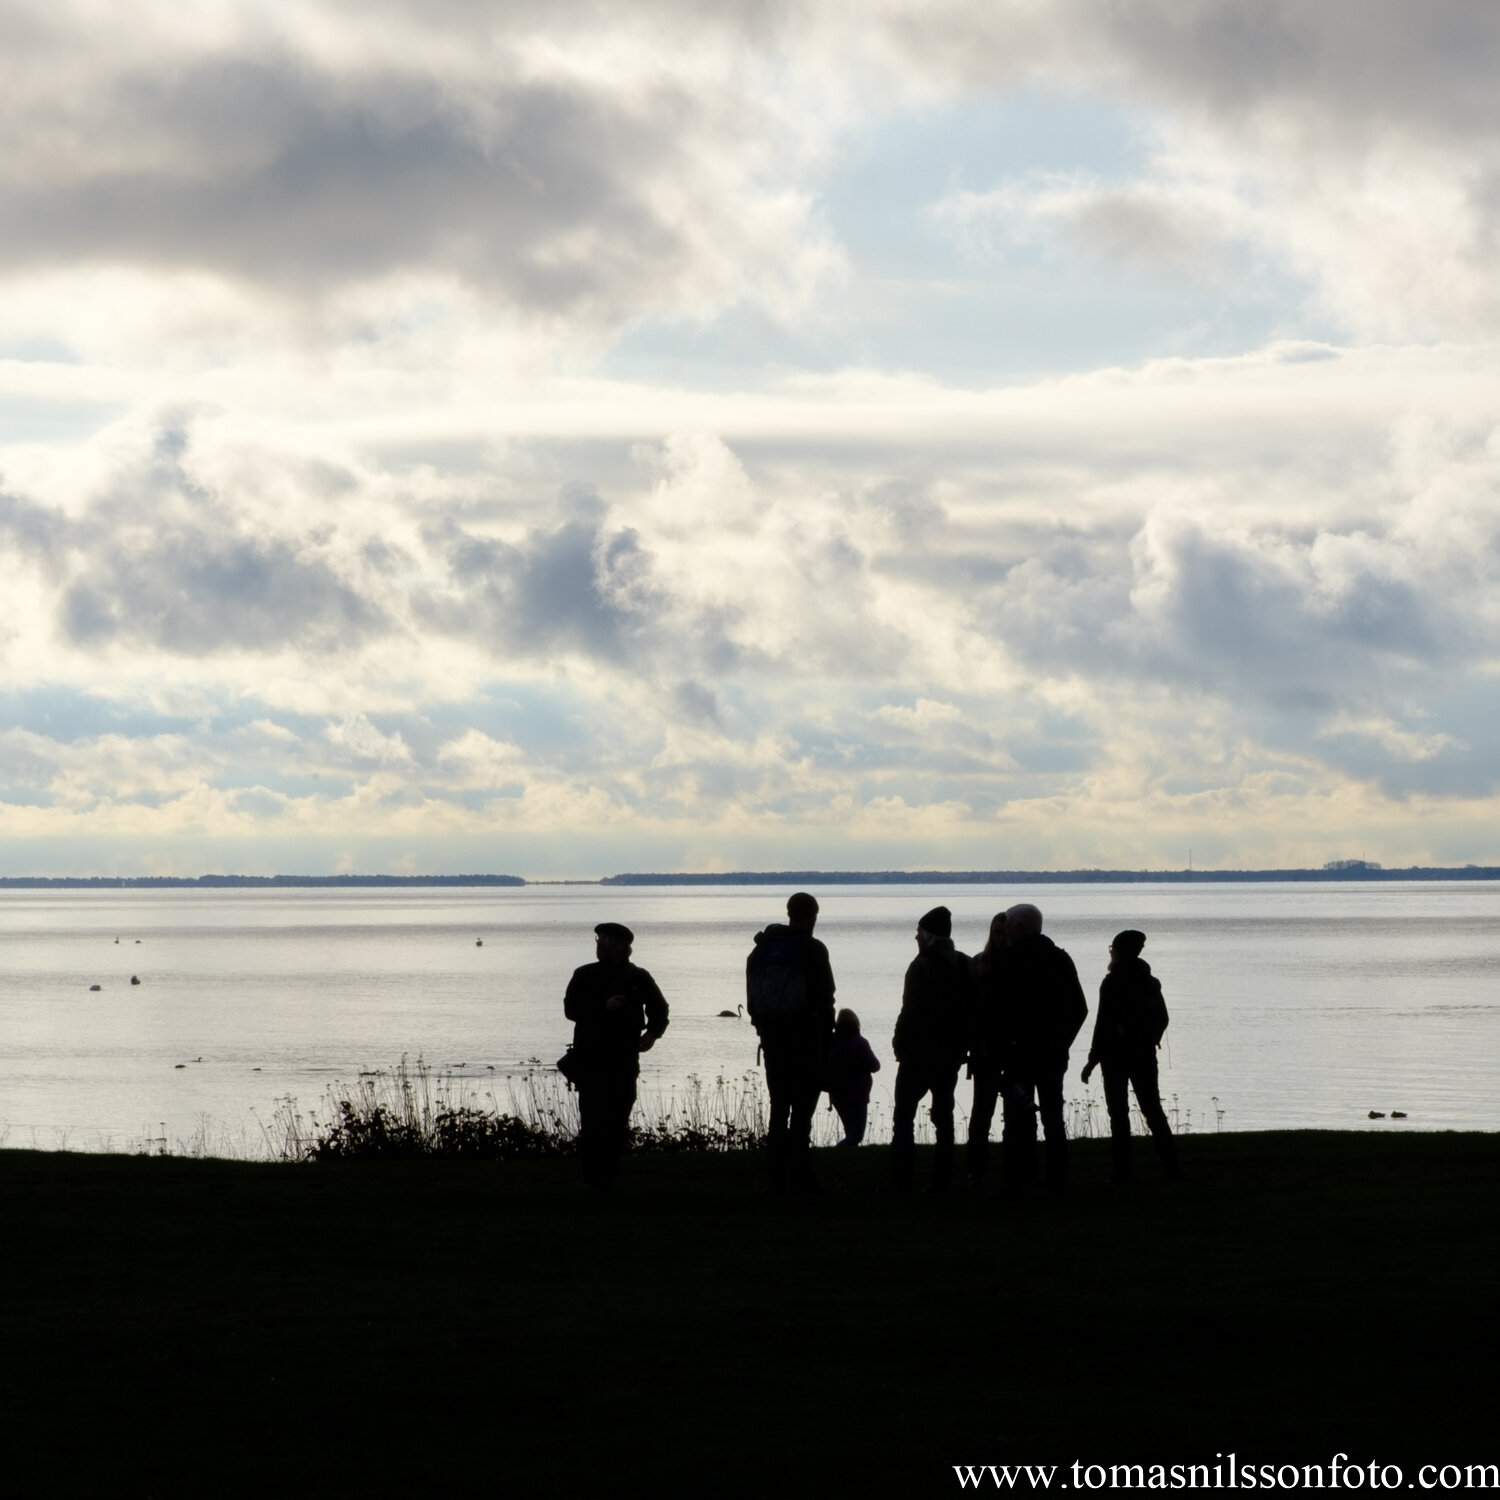 Day 315 - November 11: Photographers at the coast